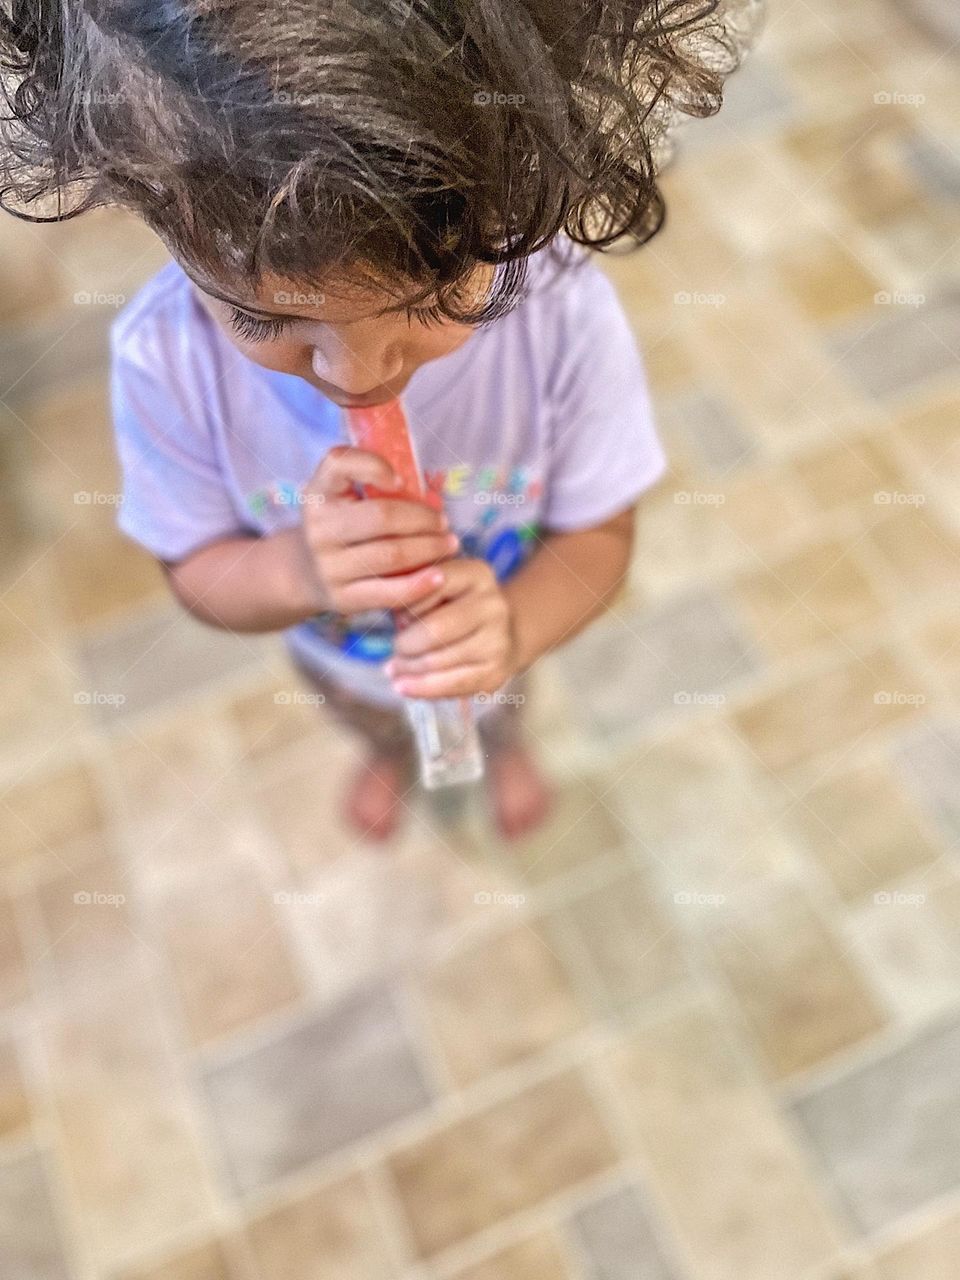 Toddler girl eating popsicle, little girl enjoying a summertime treat, summertime treat for children, popsicles in the summer 